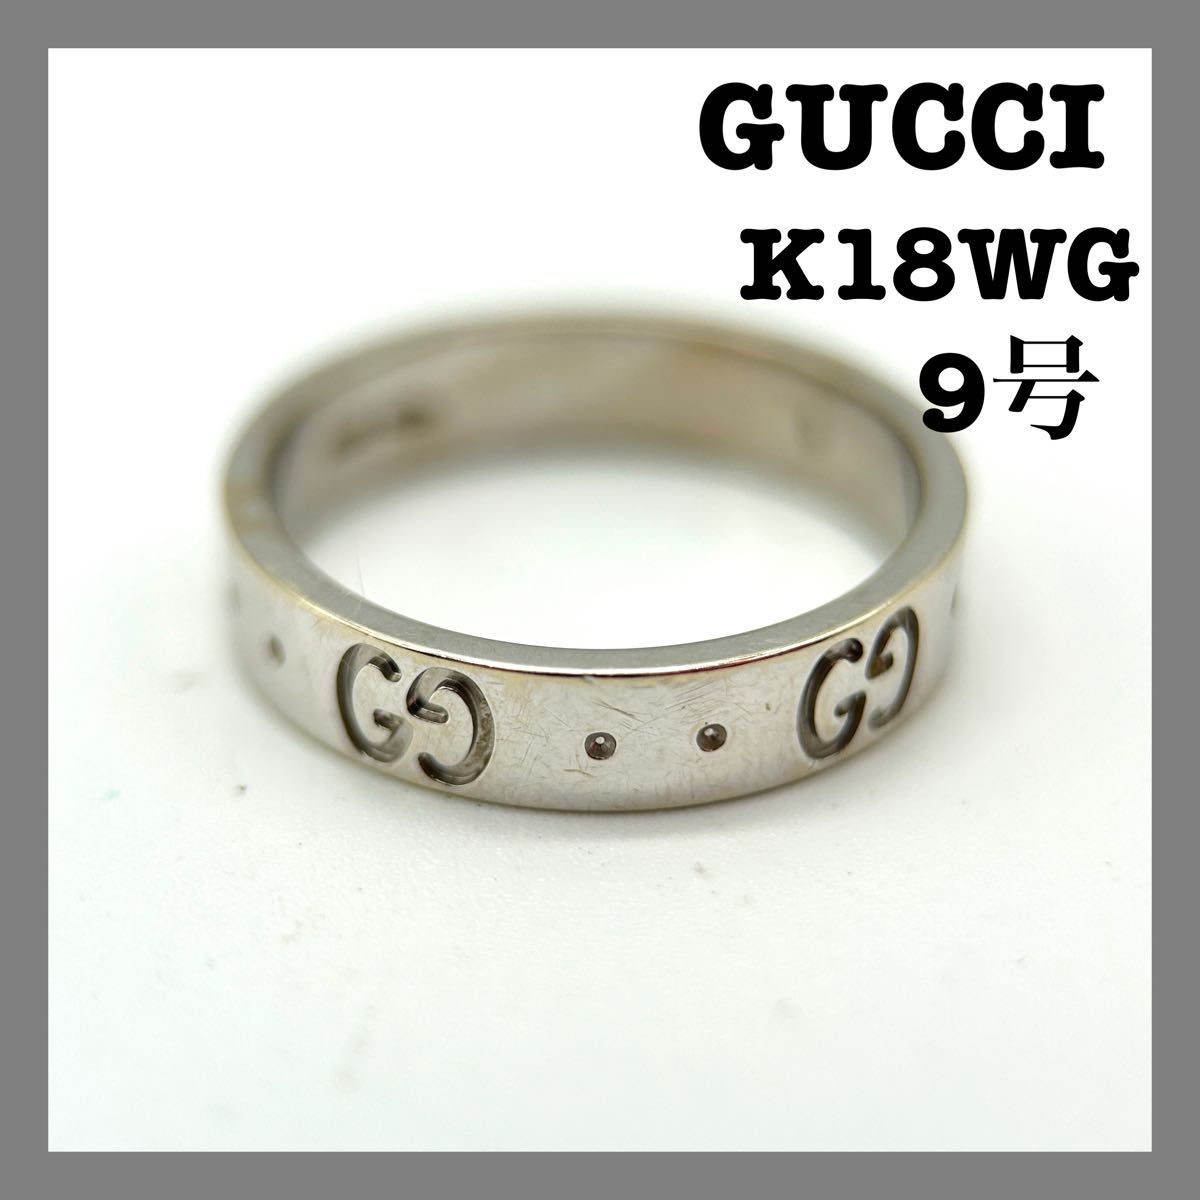 GUCCI アイコンリング K18WG 750 9号 3 2g 指輪 アクセサリー GG